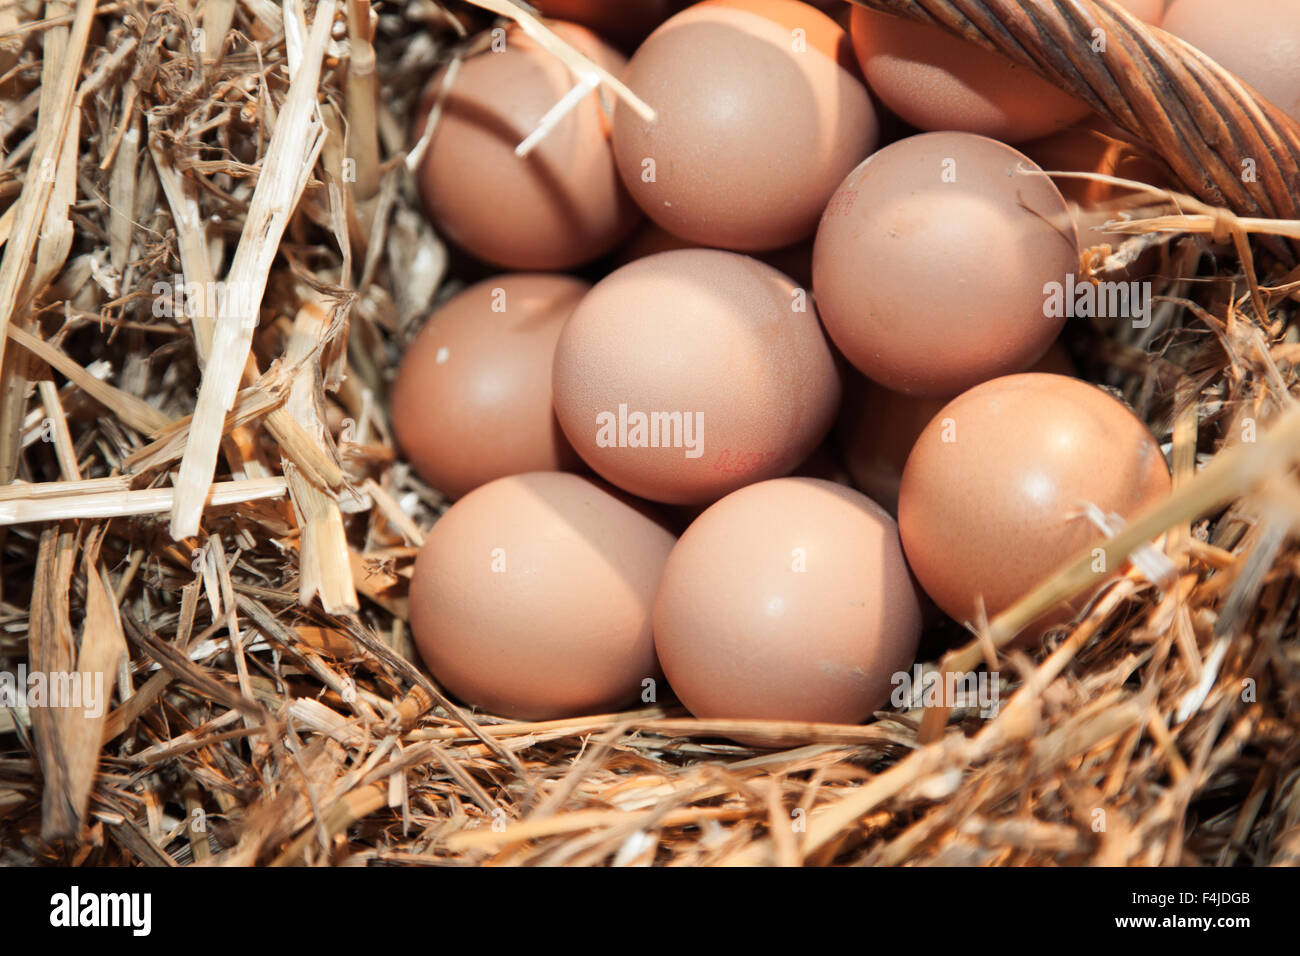 Los huevos de pollo fresco en casa de gallina Foto de stock